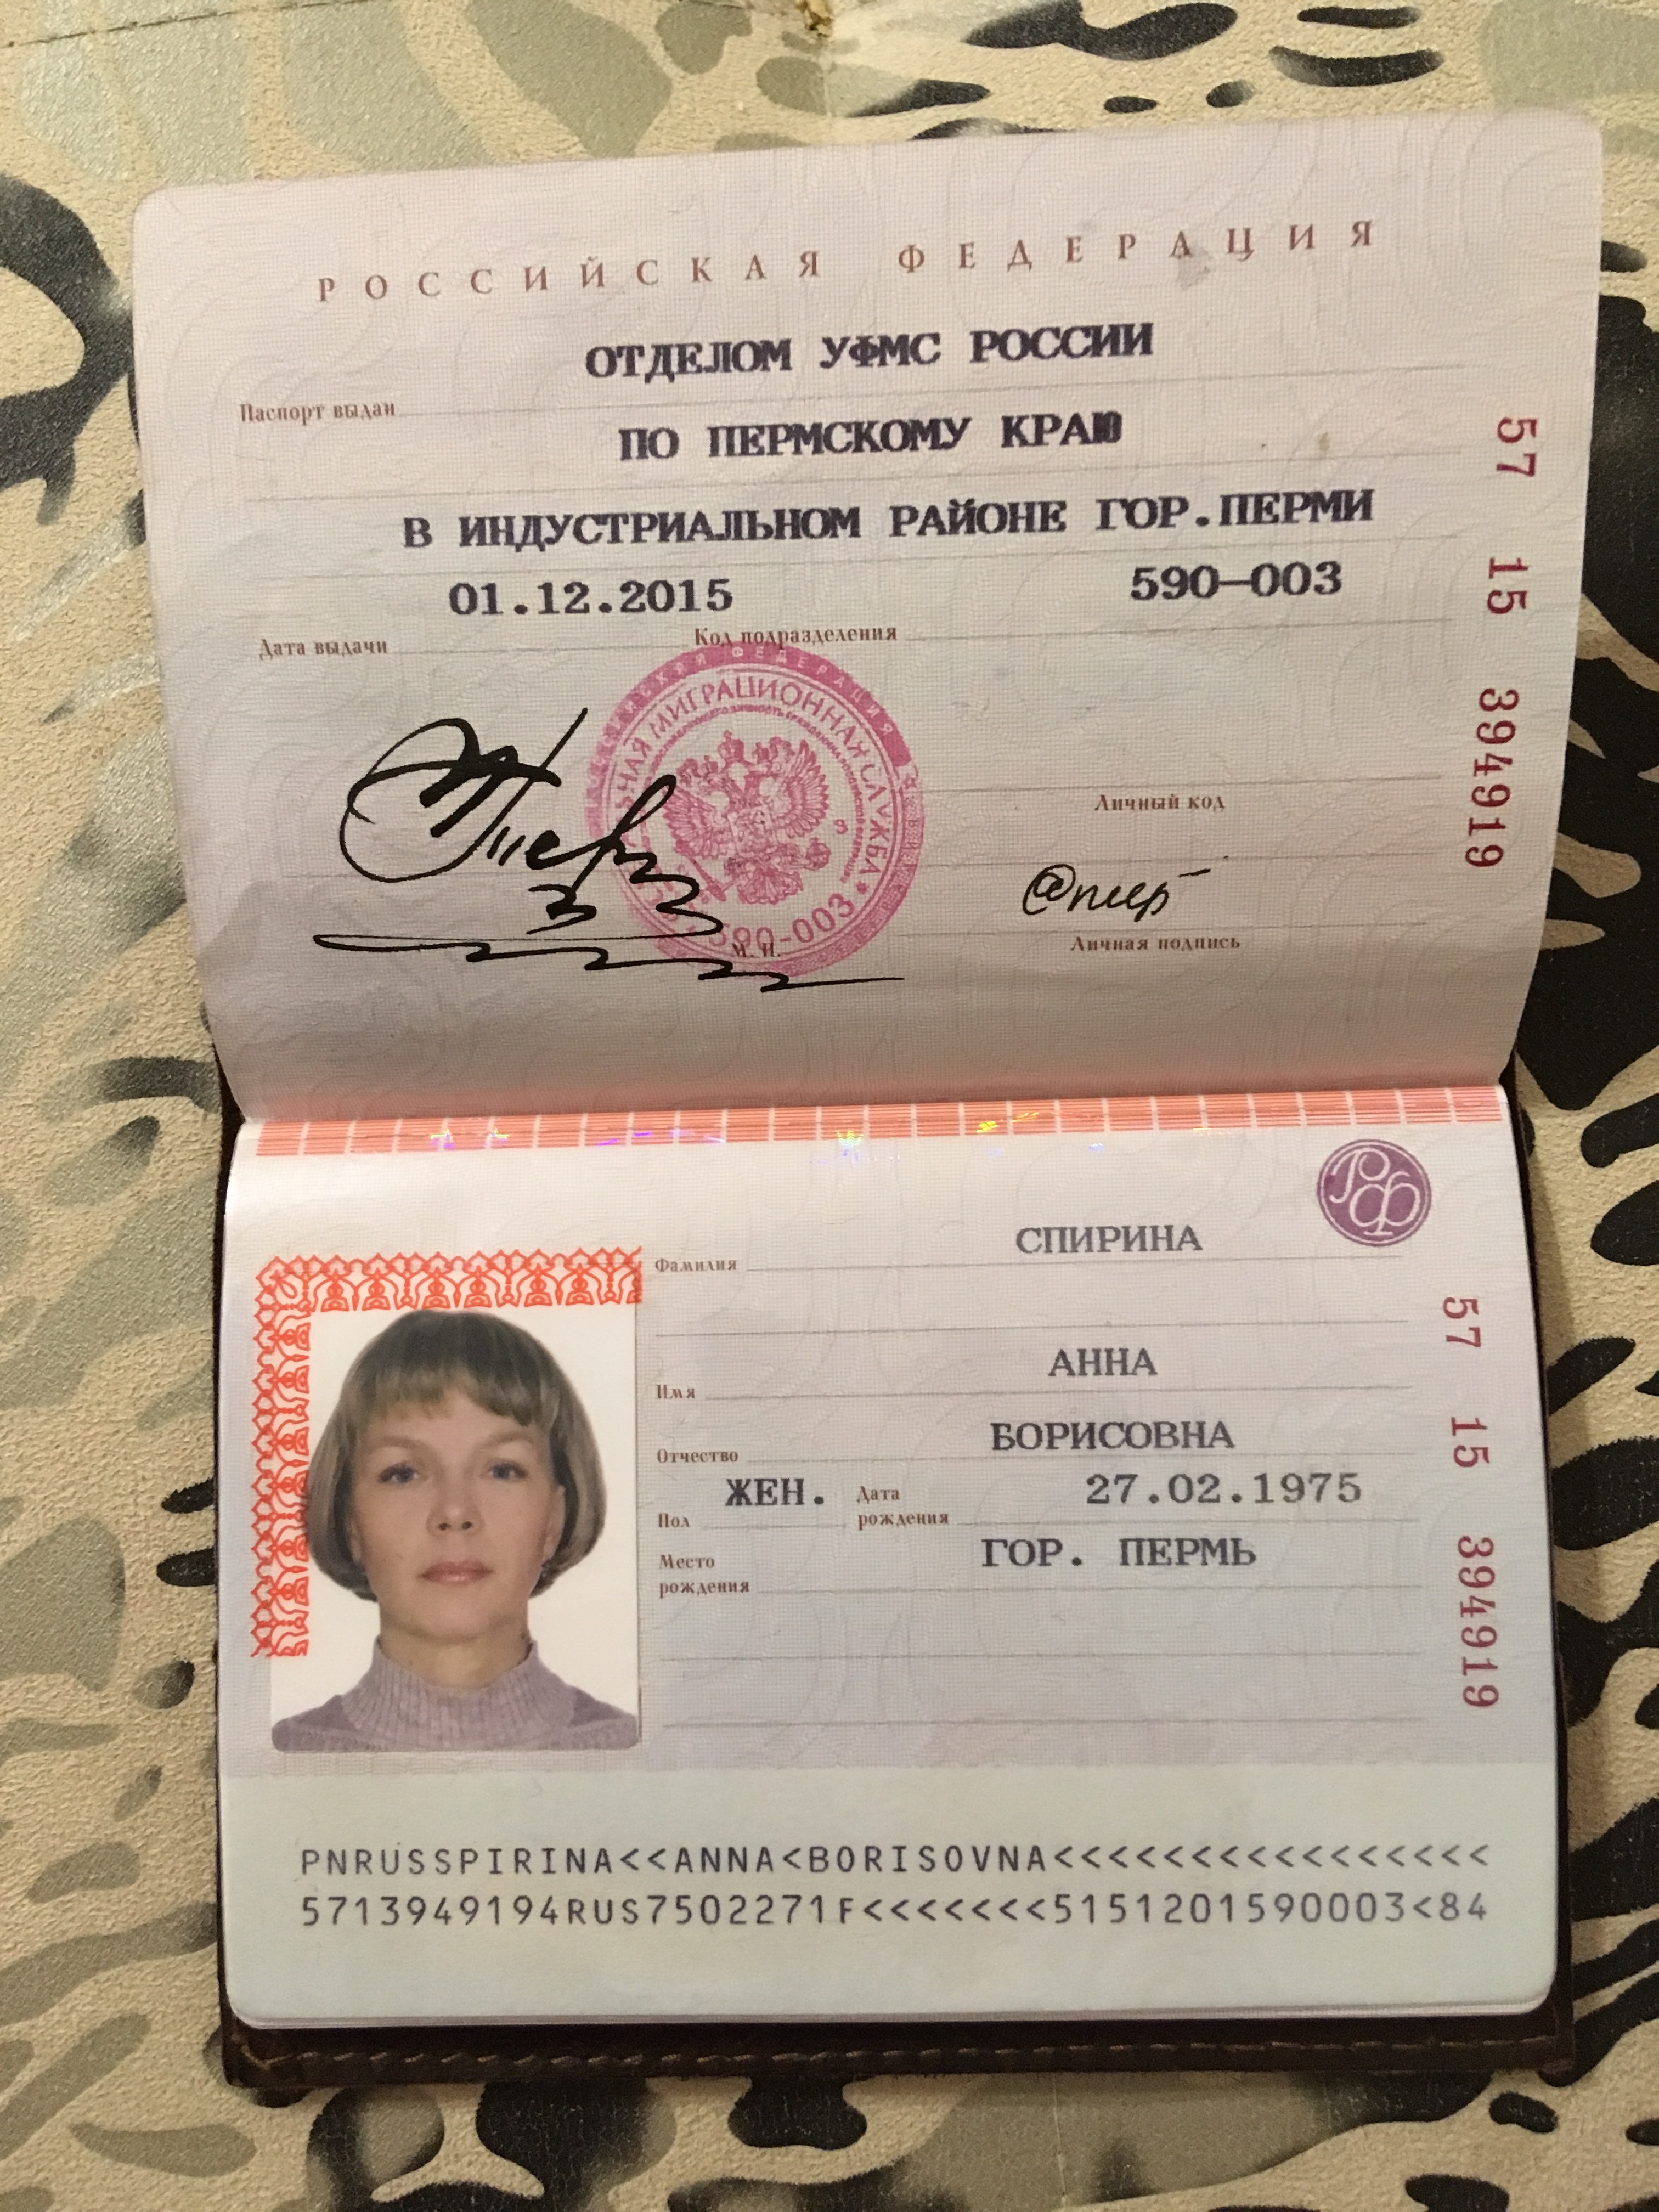 Данные паспорта